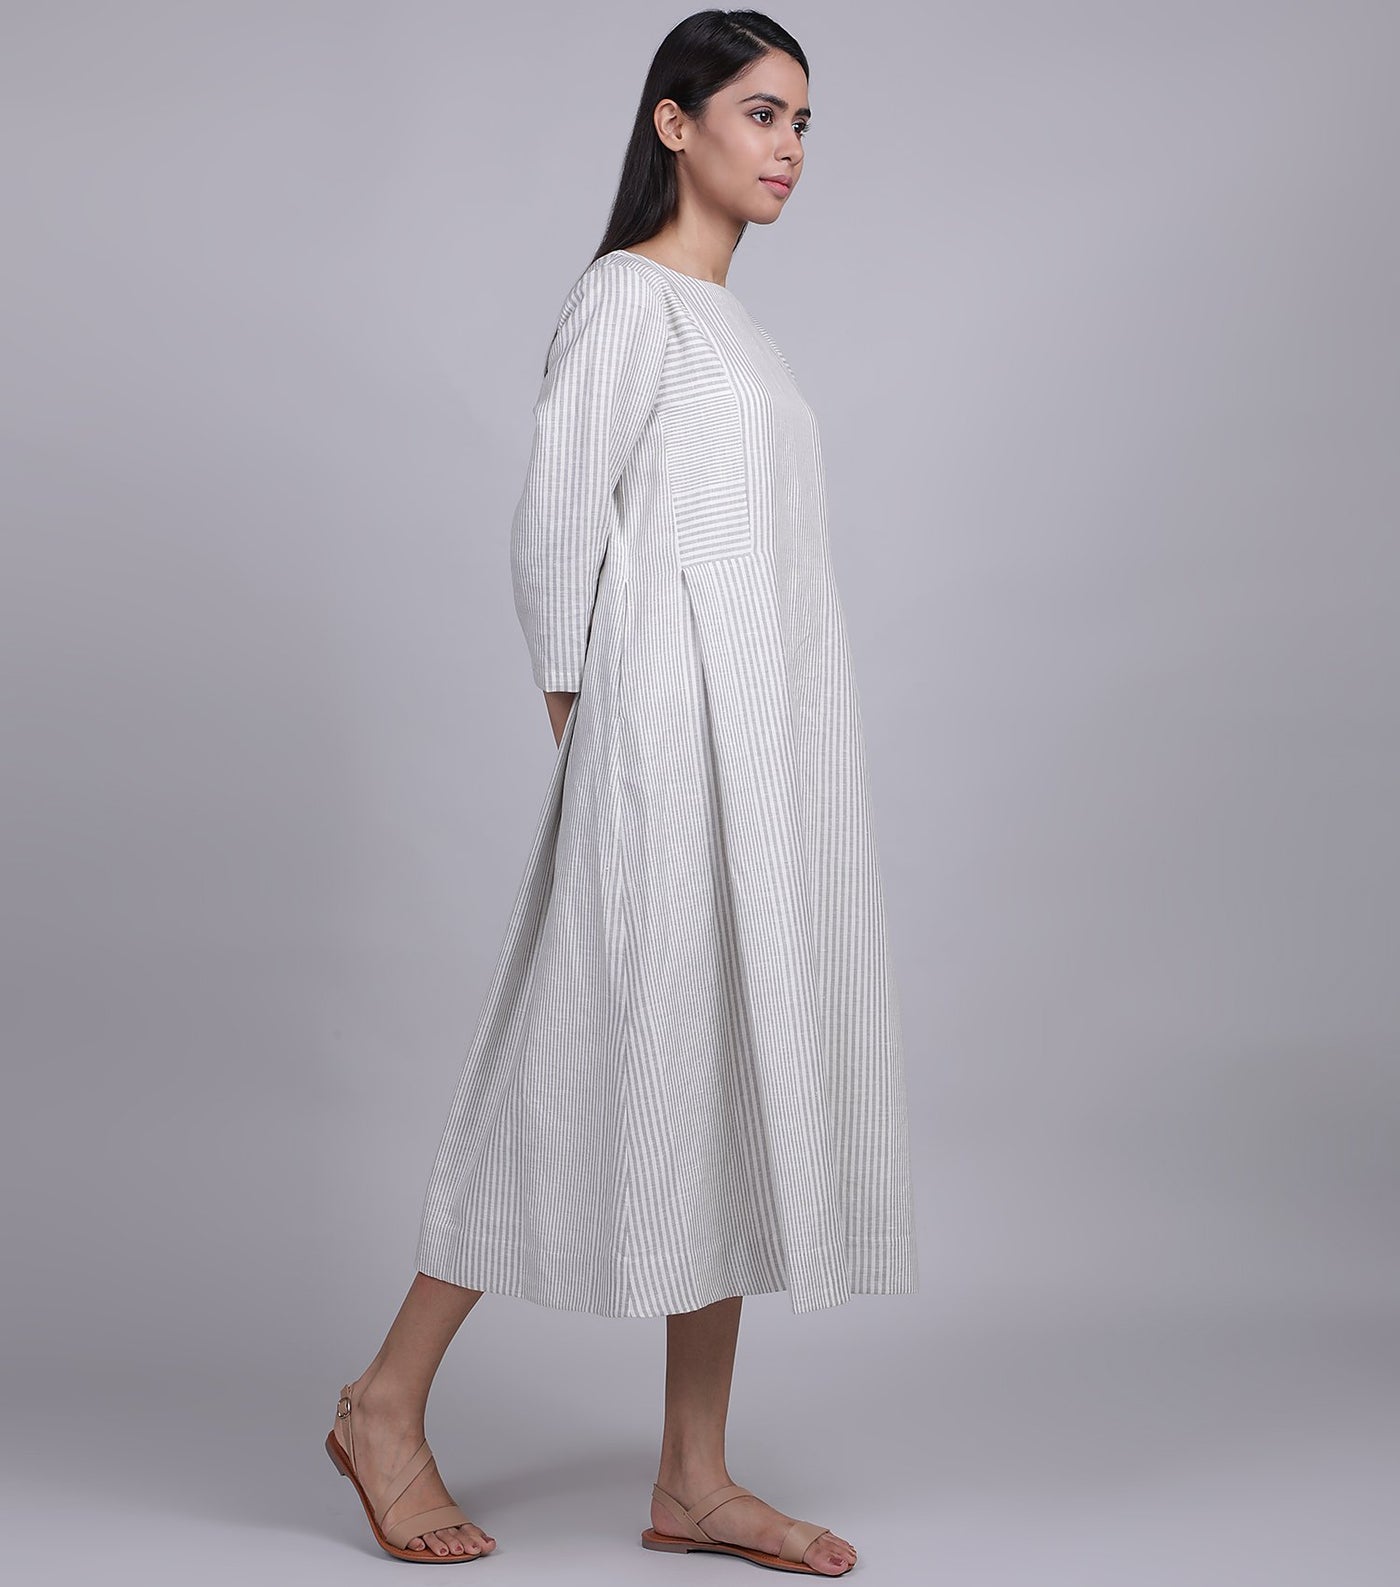 Natural Summer Cotton Linen Dress